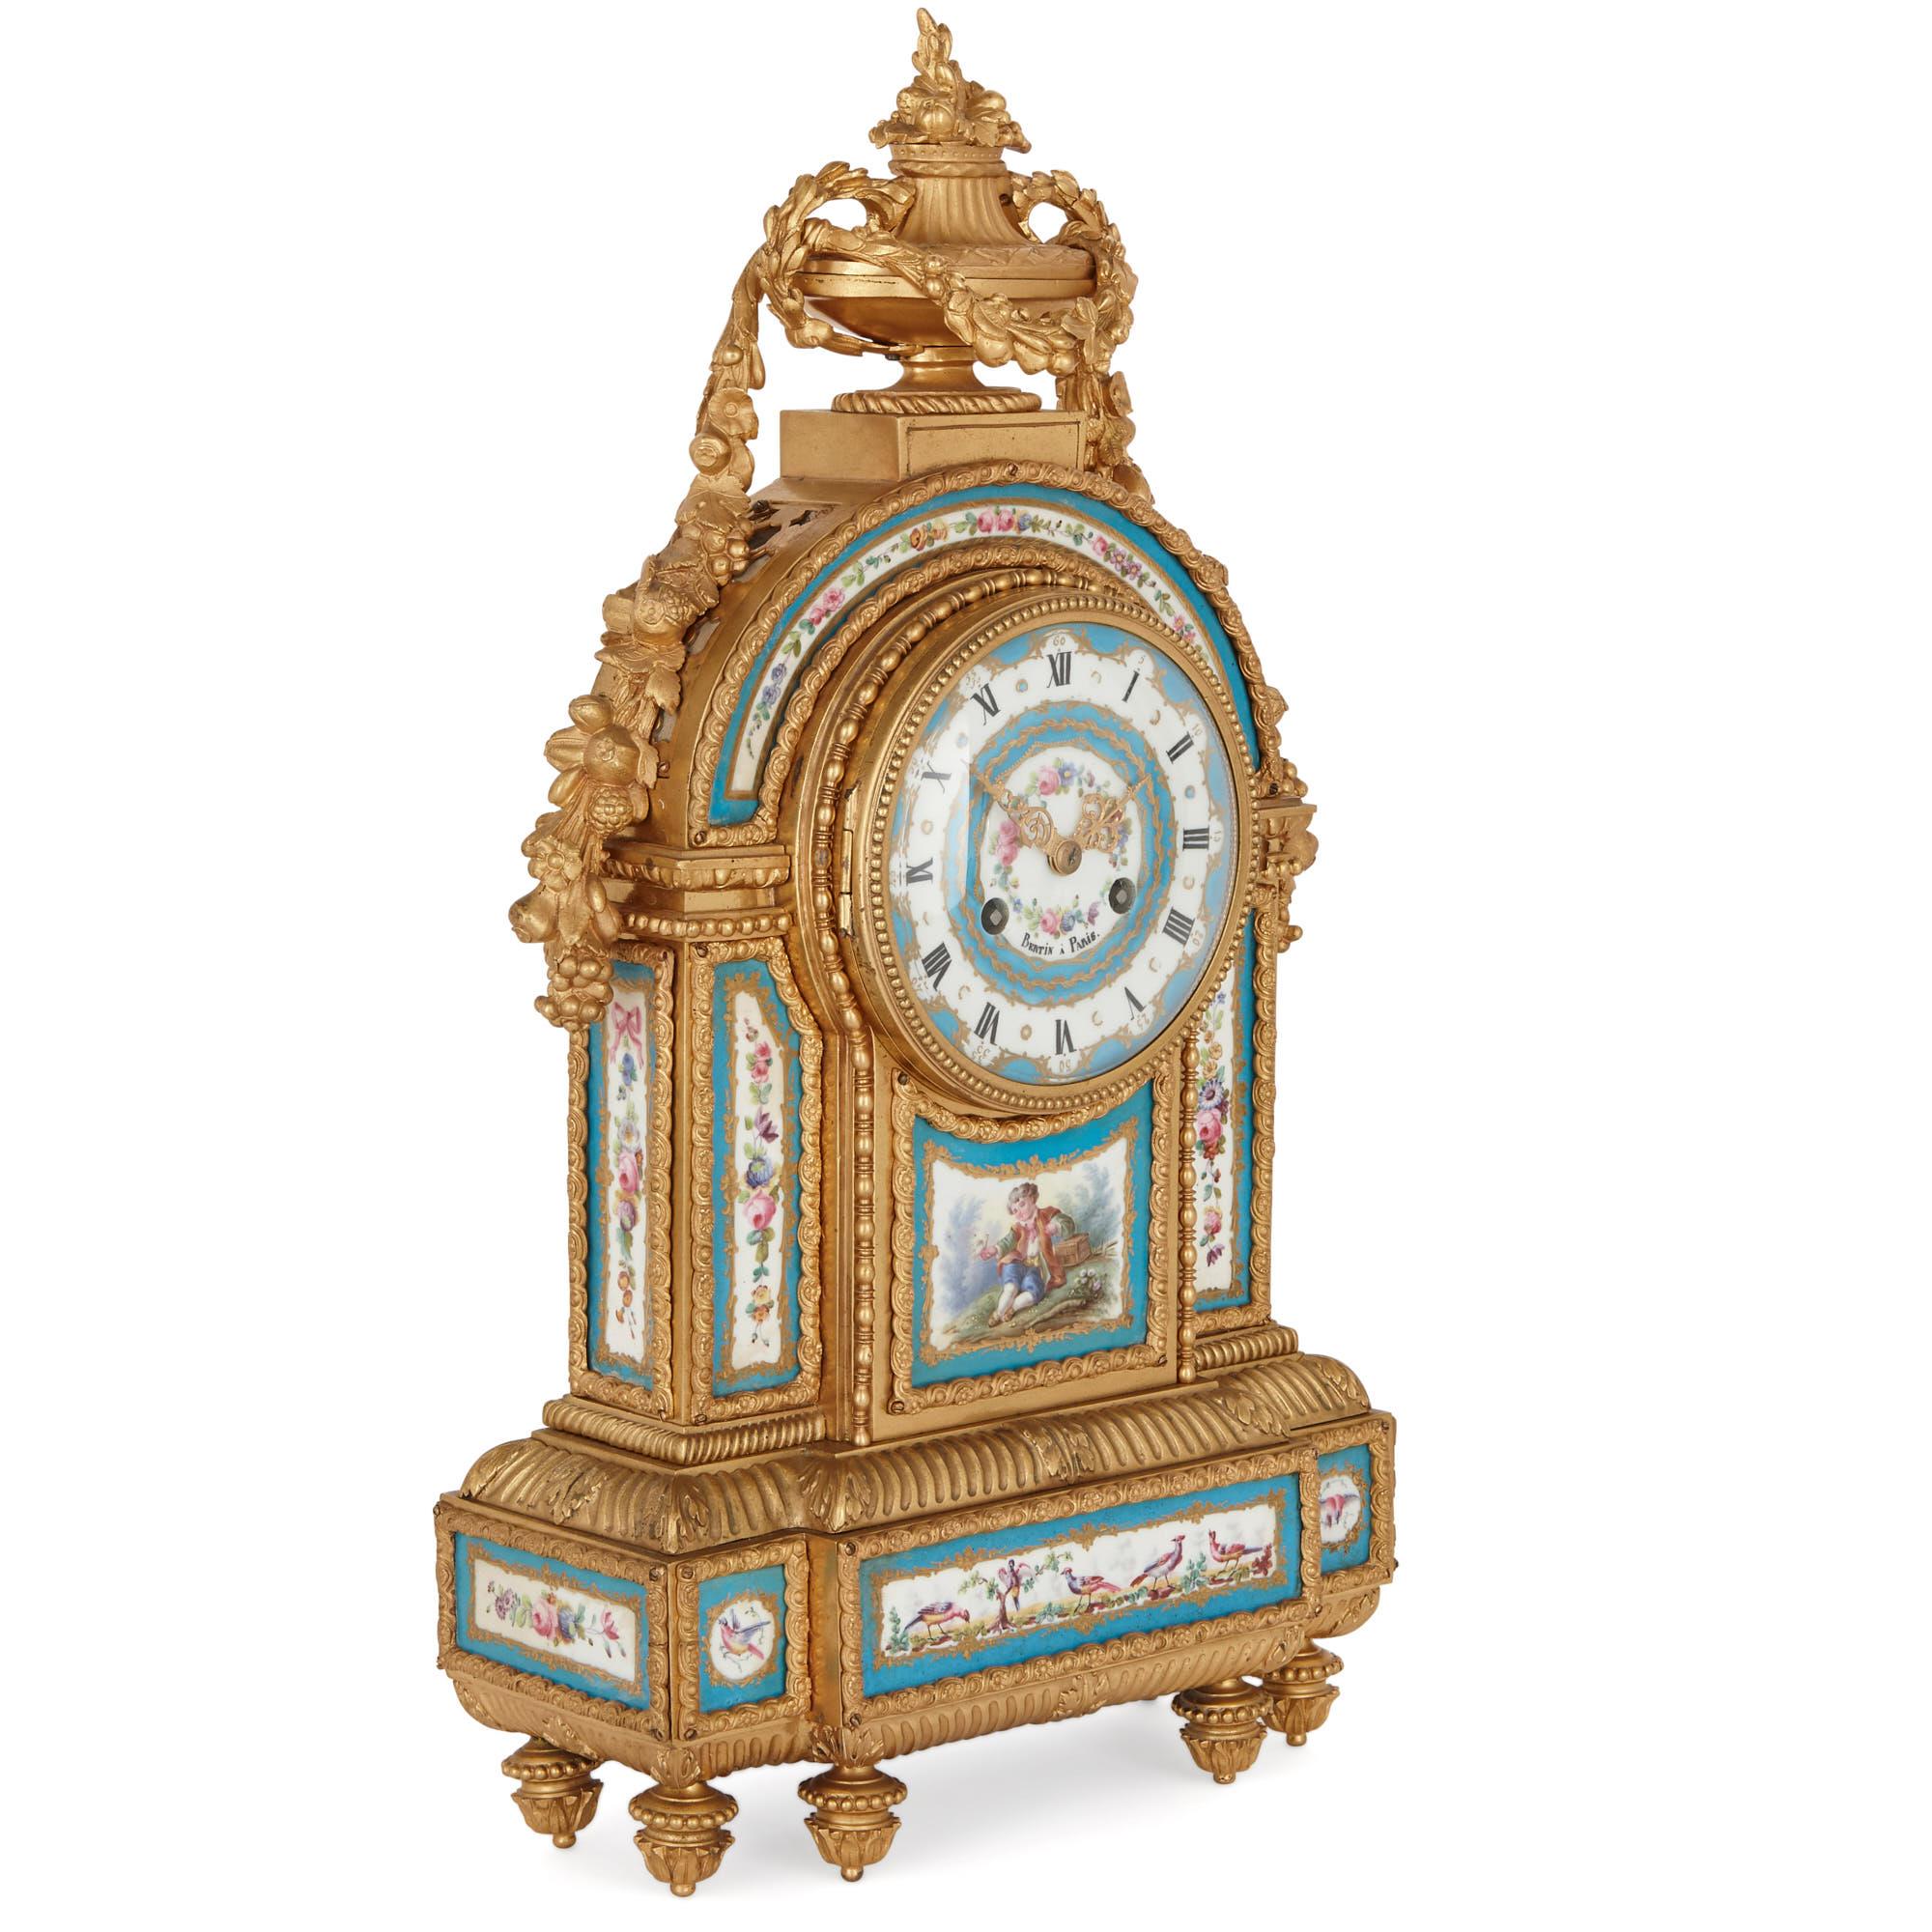 Diese schöne Kaminsimsuhr wurde im Rokoko-Stil des 18. Jahrhunderts entworfen, der durch die Porzellanmanufaktur Sèvres populär wurde. Die Uhr wurde fachmännisch in Bronze gegossen und vergoldet und dann mit aufwendig bemalten Porzellanplättchen